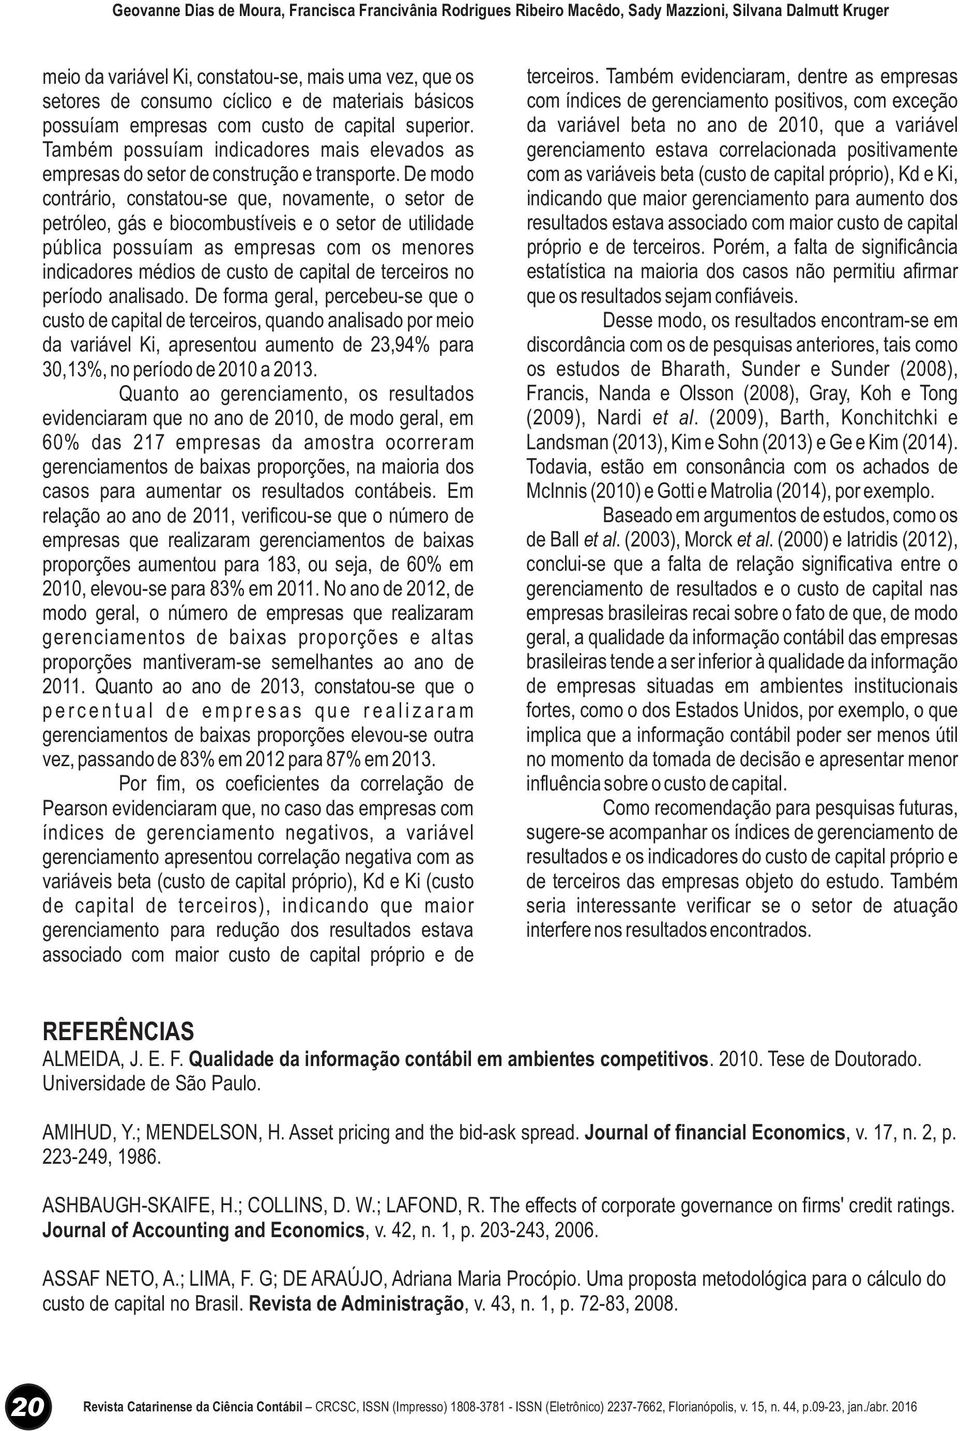 informação contábil em ambientes competitivos Journal of financial Economics